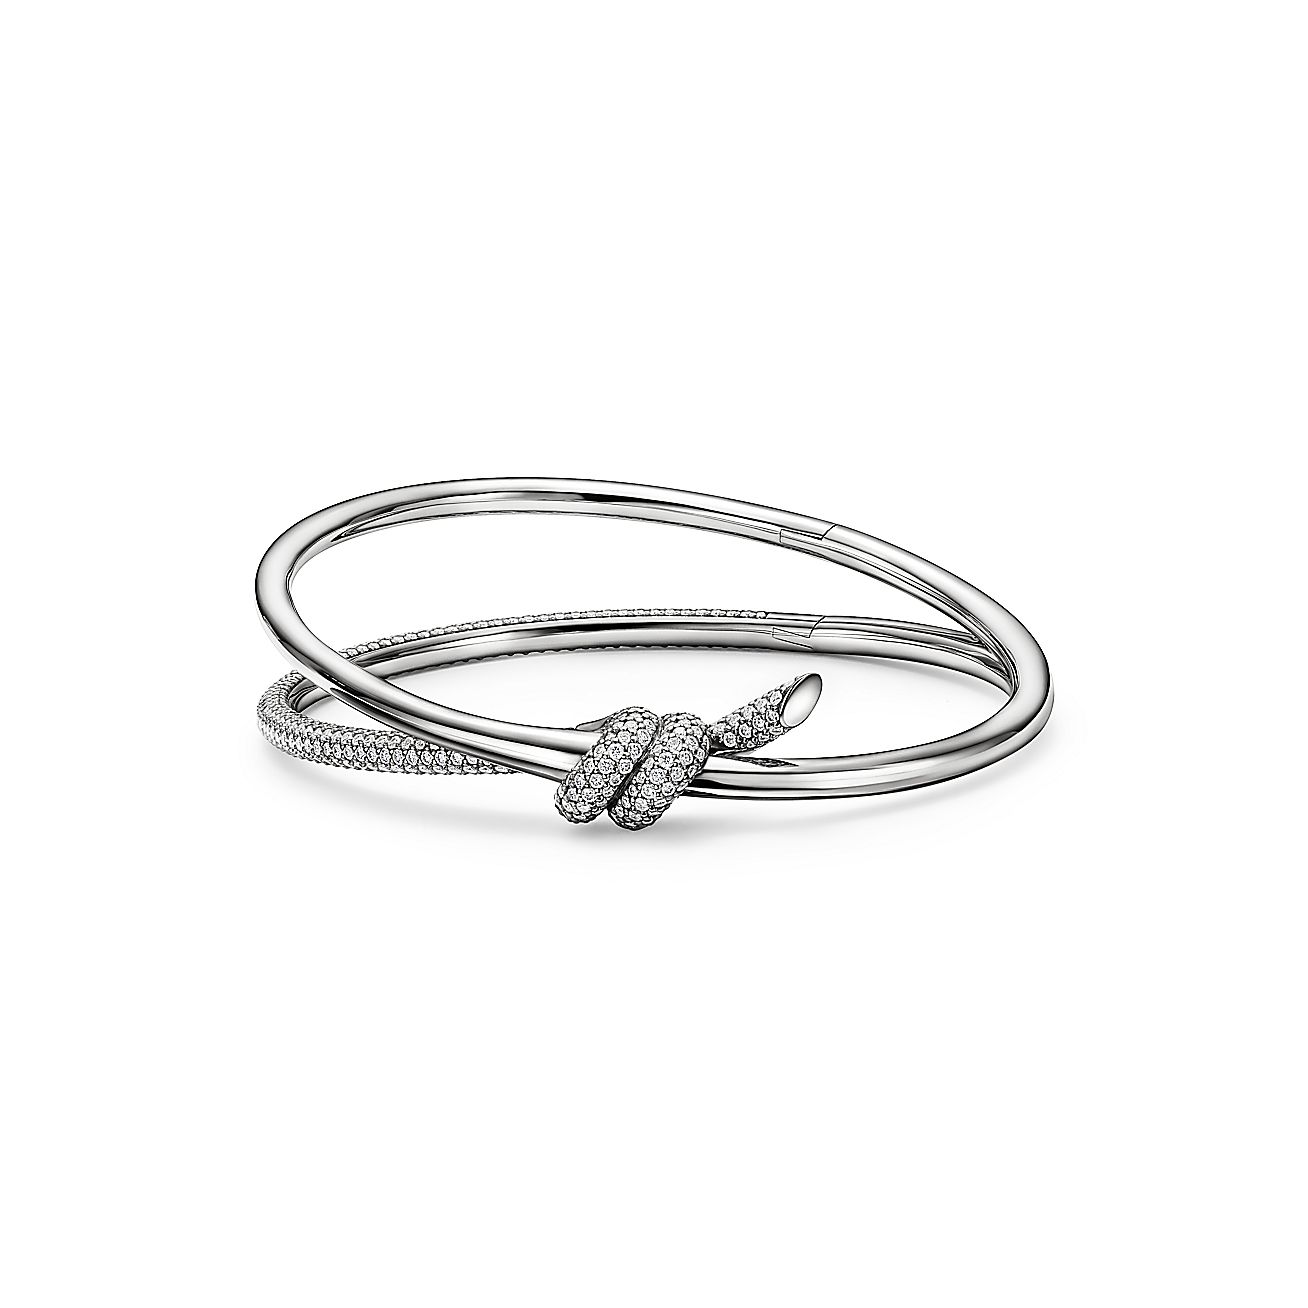 Tiffany Knot Double Row Ring